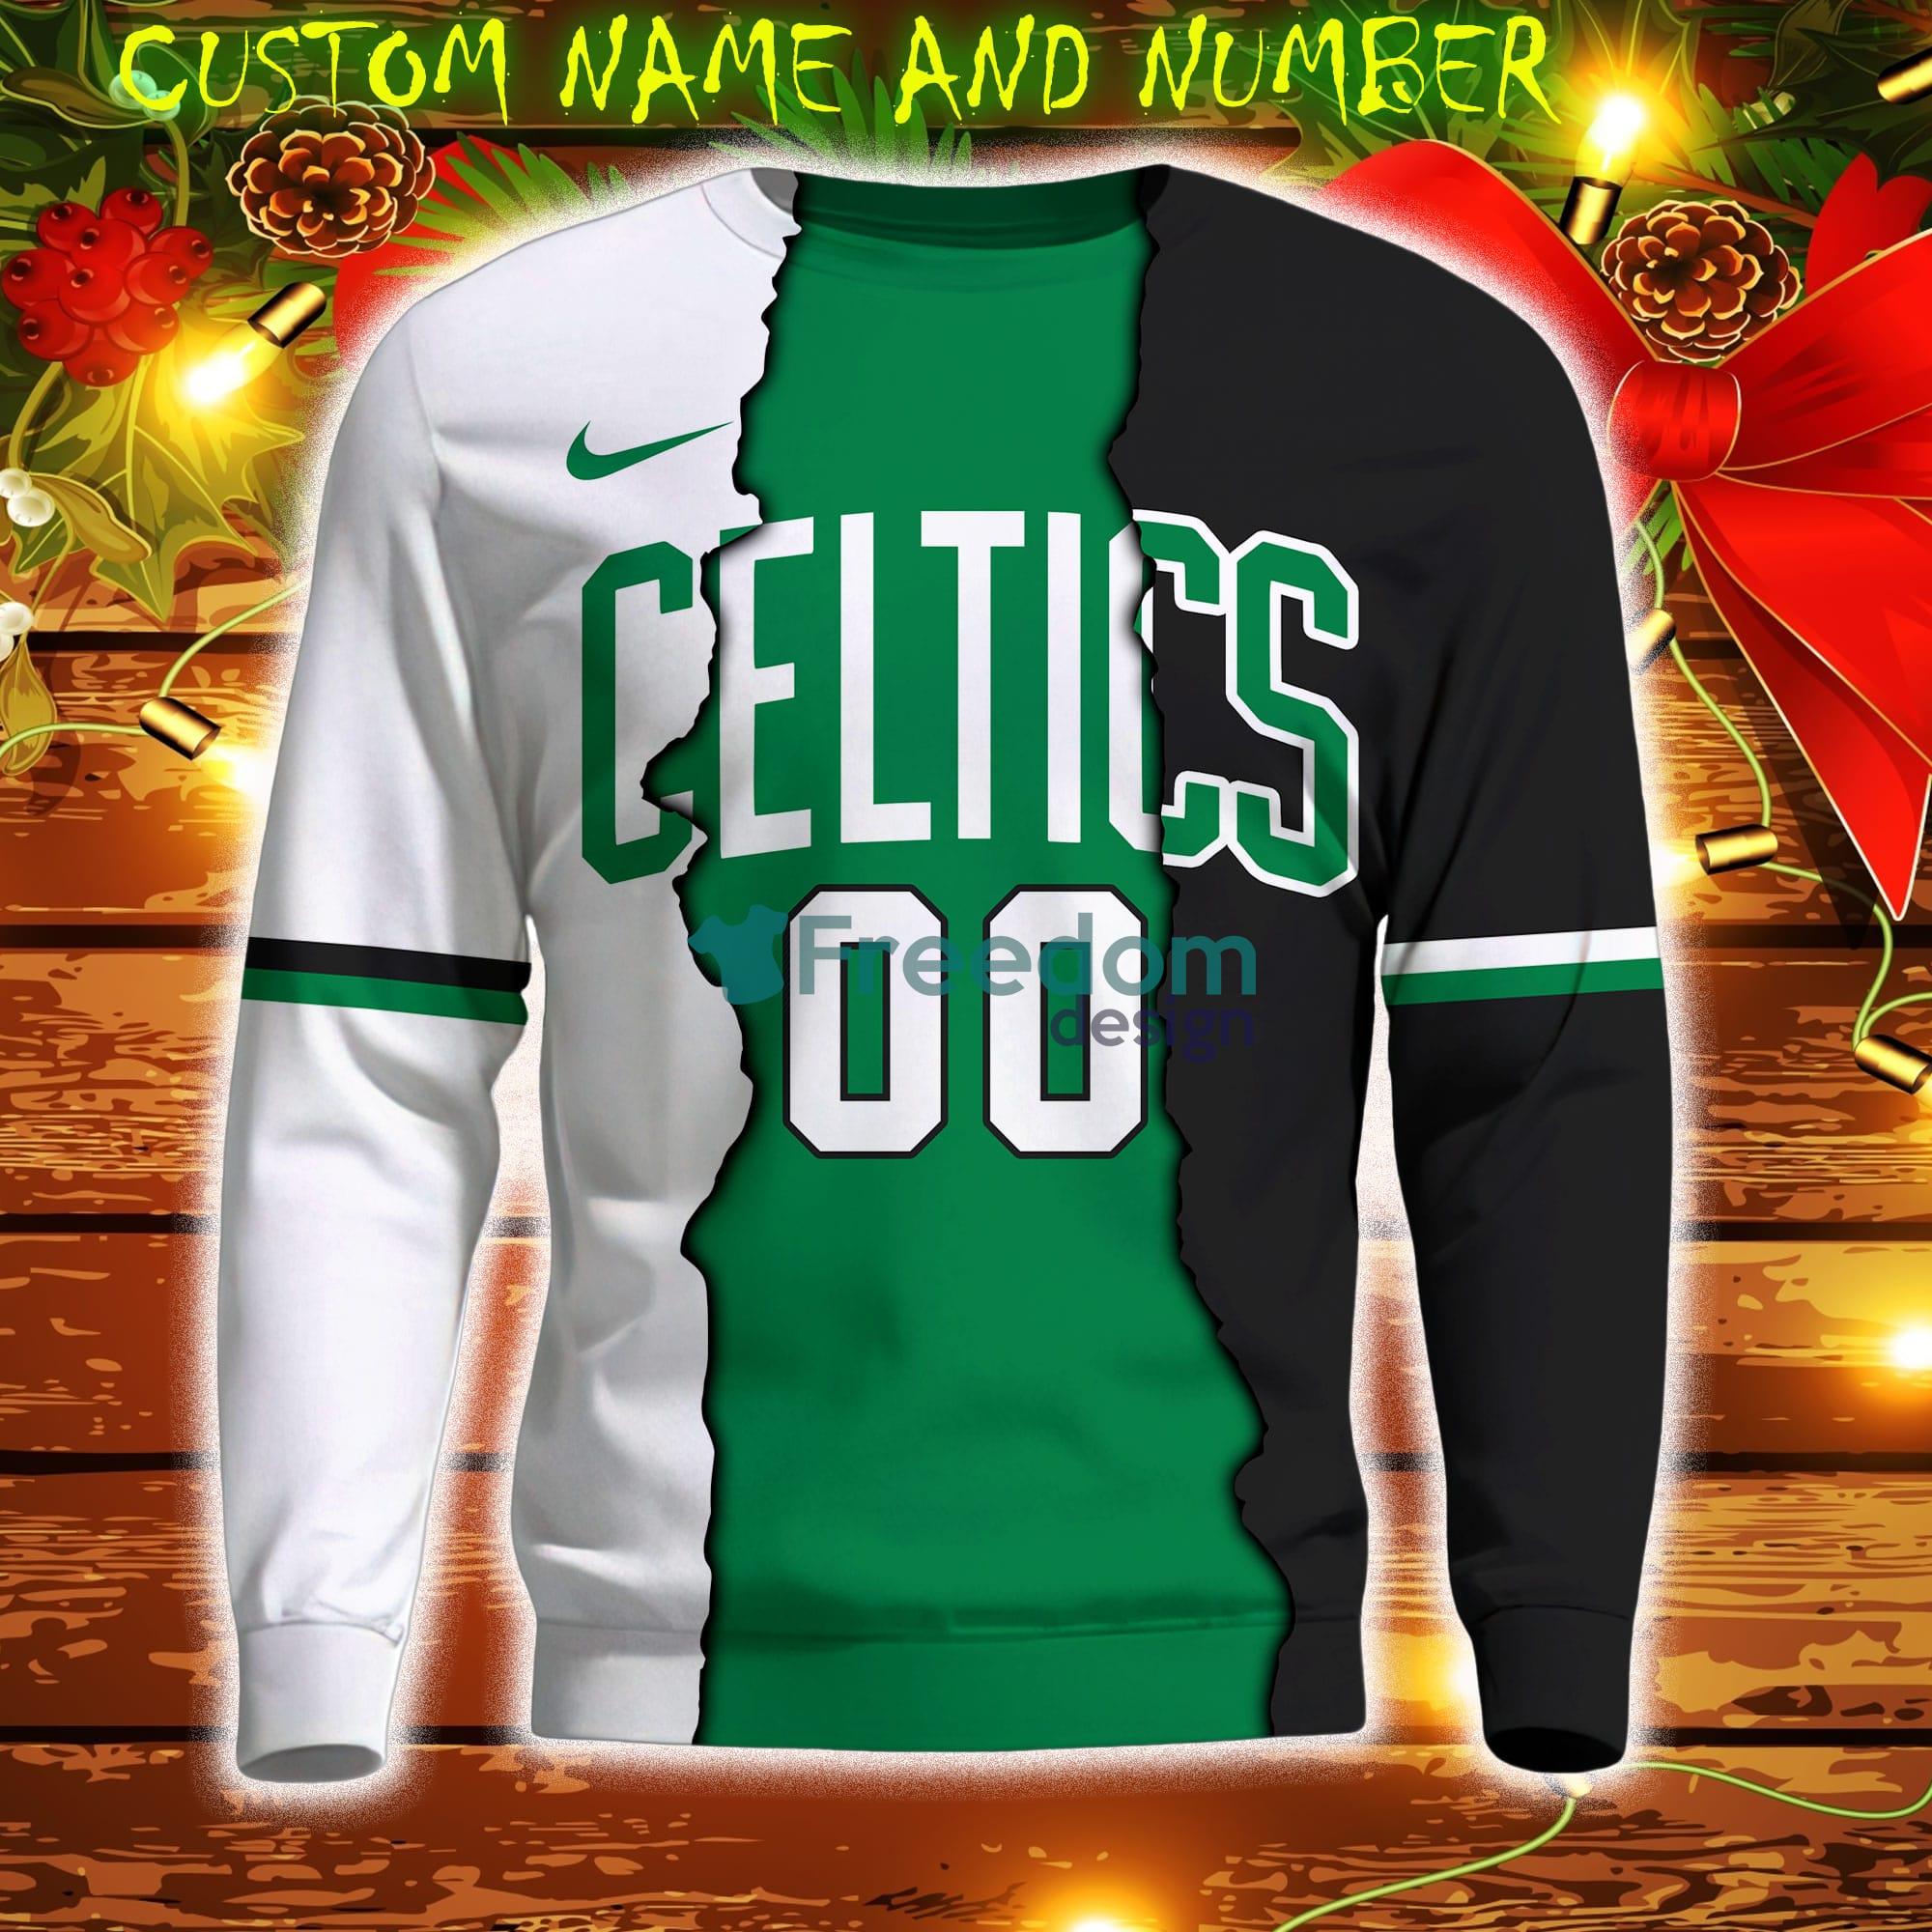 Boston Celtics NBA Sweatshirt